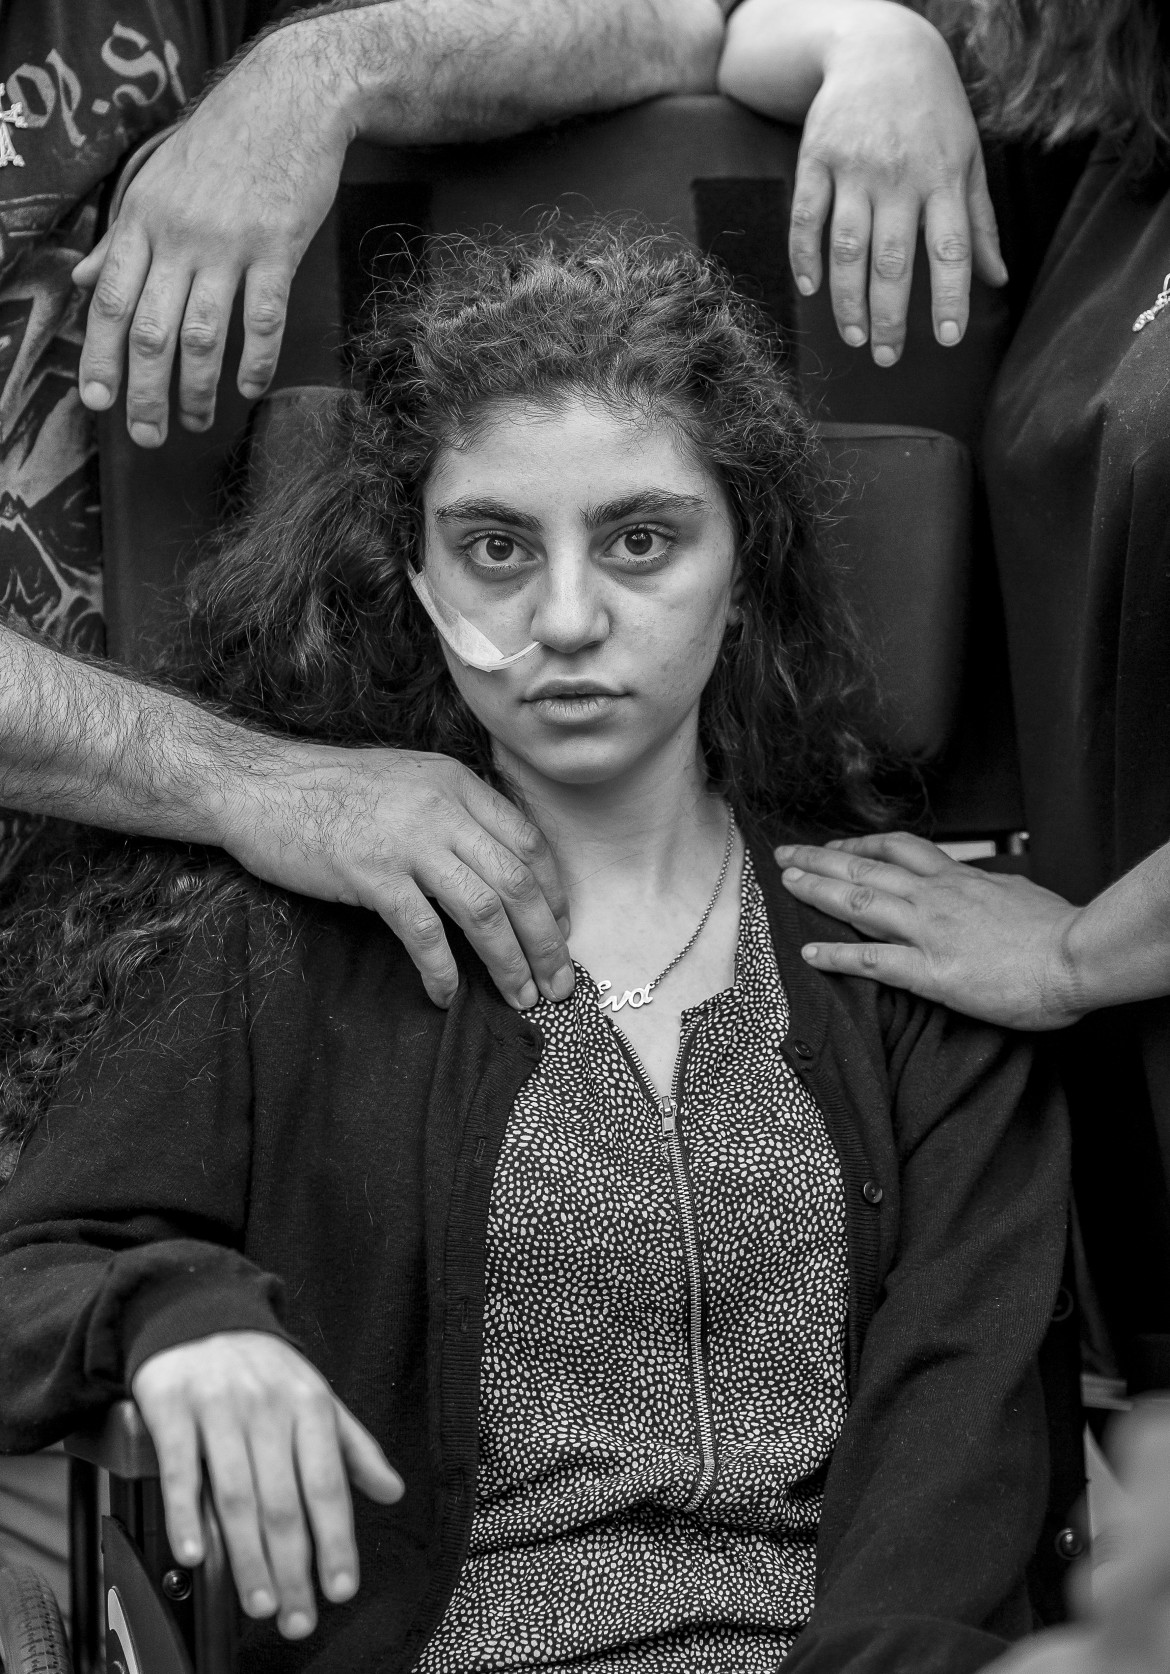 fot. Tomasz Kaczor<br></br><br></br>Zdjęcie zatytułowane „Awakening” przedstawia armeńską nastolatkę przebudzoną ze stanu katatonicznego, będącego skutkiem tzw. Syndromu Rezygnacji. Syndrom ten, objawiający się stanem przypominającym śpiączkę (brak reakcji na bodźce, utrata kontaktu z rzeczywistością) został zaobserwowany po raz pierwszy w latach 90. wśród dzieci z rodzin imigrantów ubiegających się o azyl.

Dziewczynka na zdjęciu została dotknięta wspomnianym syndromem w momencie, gdy jej rodzina ubiegała się o azyl w Szwecji. Jej stan poprawił się osiem miesięcy później, gdy rodzina został deportowana do Polski. Zdjęcie zostało wykonane w ośrodku dla uchodźców w Podkowie Leśnej.